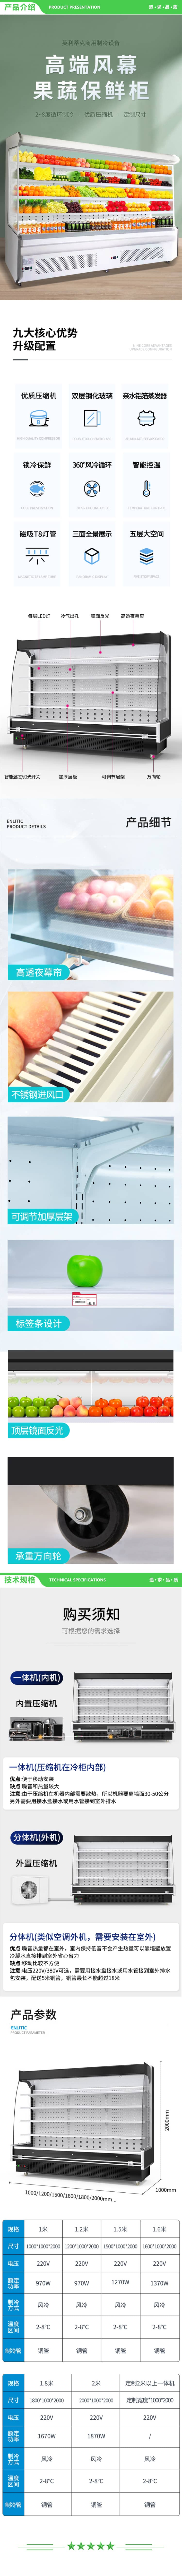 英利蒂克 Enlitic FMG1800Y 风幕展示柜 蔬菜水果保鲜风冷柜 冷藏柜 商用柜 1.8米【高端风冷款】一体机 2.jpg